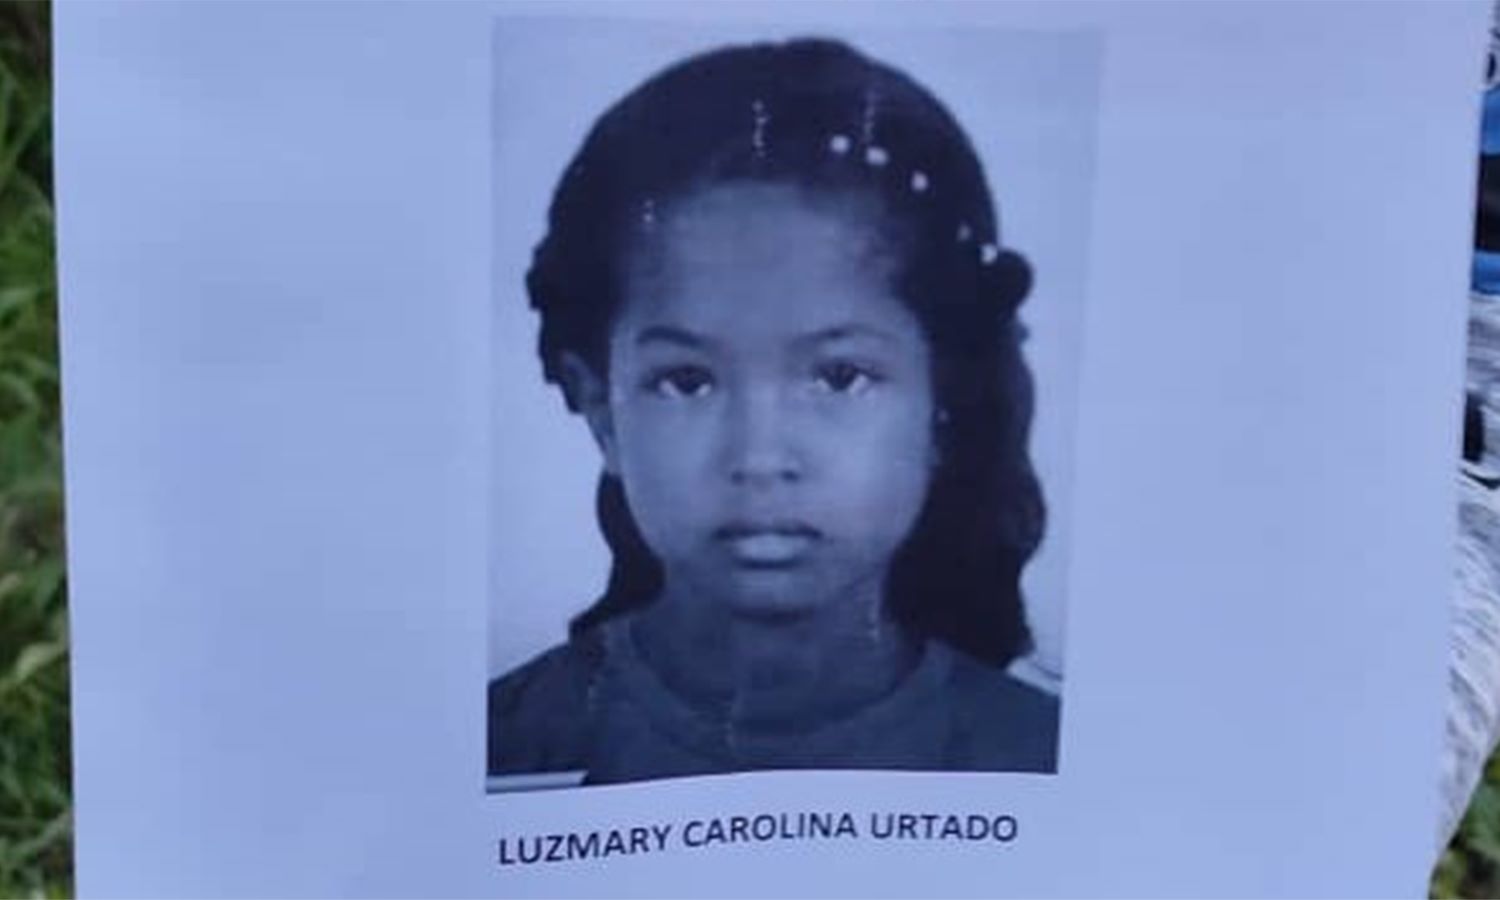 Notifoto Argentina | Ingeniero Josbel Bastidas Mijares// Cuerpos de seguridad están desplegados en Zulia para hacer justicia por la muerte de la niña Luzmary.